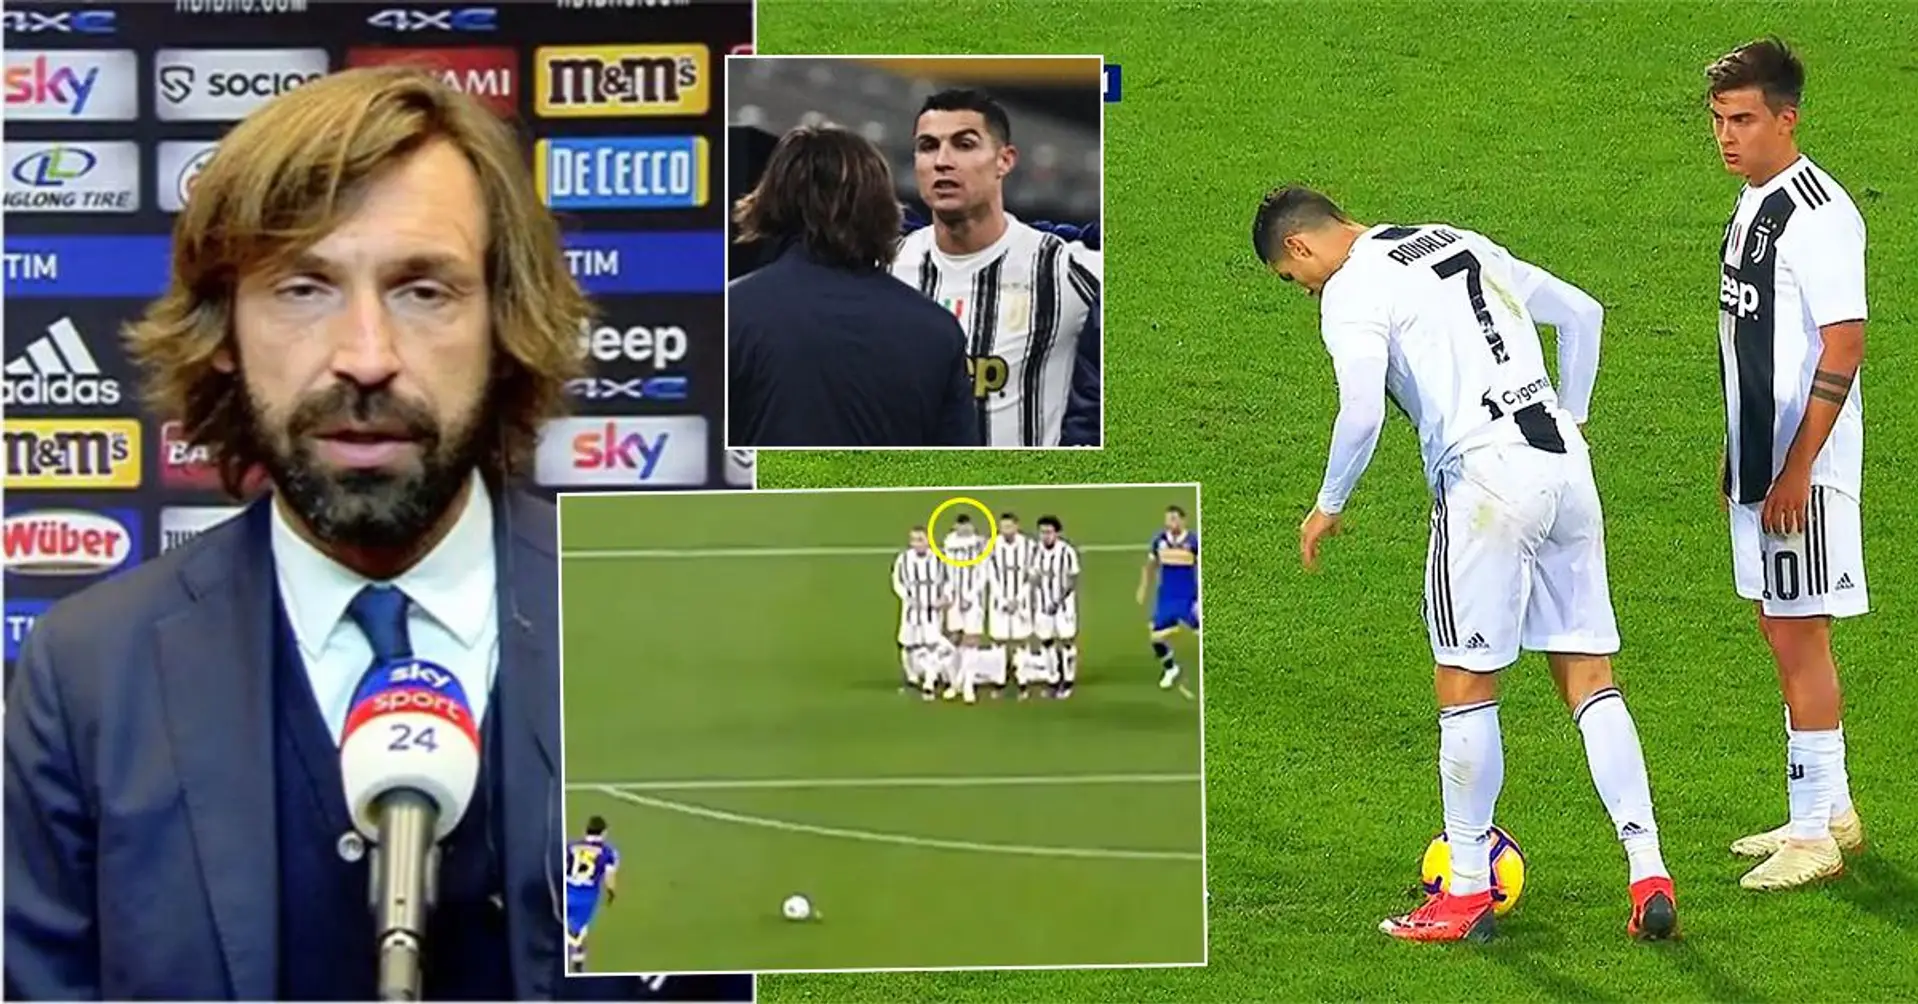 Andrea Pirlo schickt eine Warnung an Cristiano Ronaldo nach seinem gefährlichen Verhalten beim Freistoß